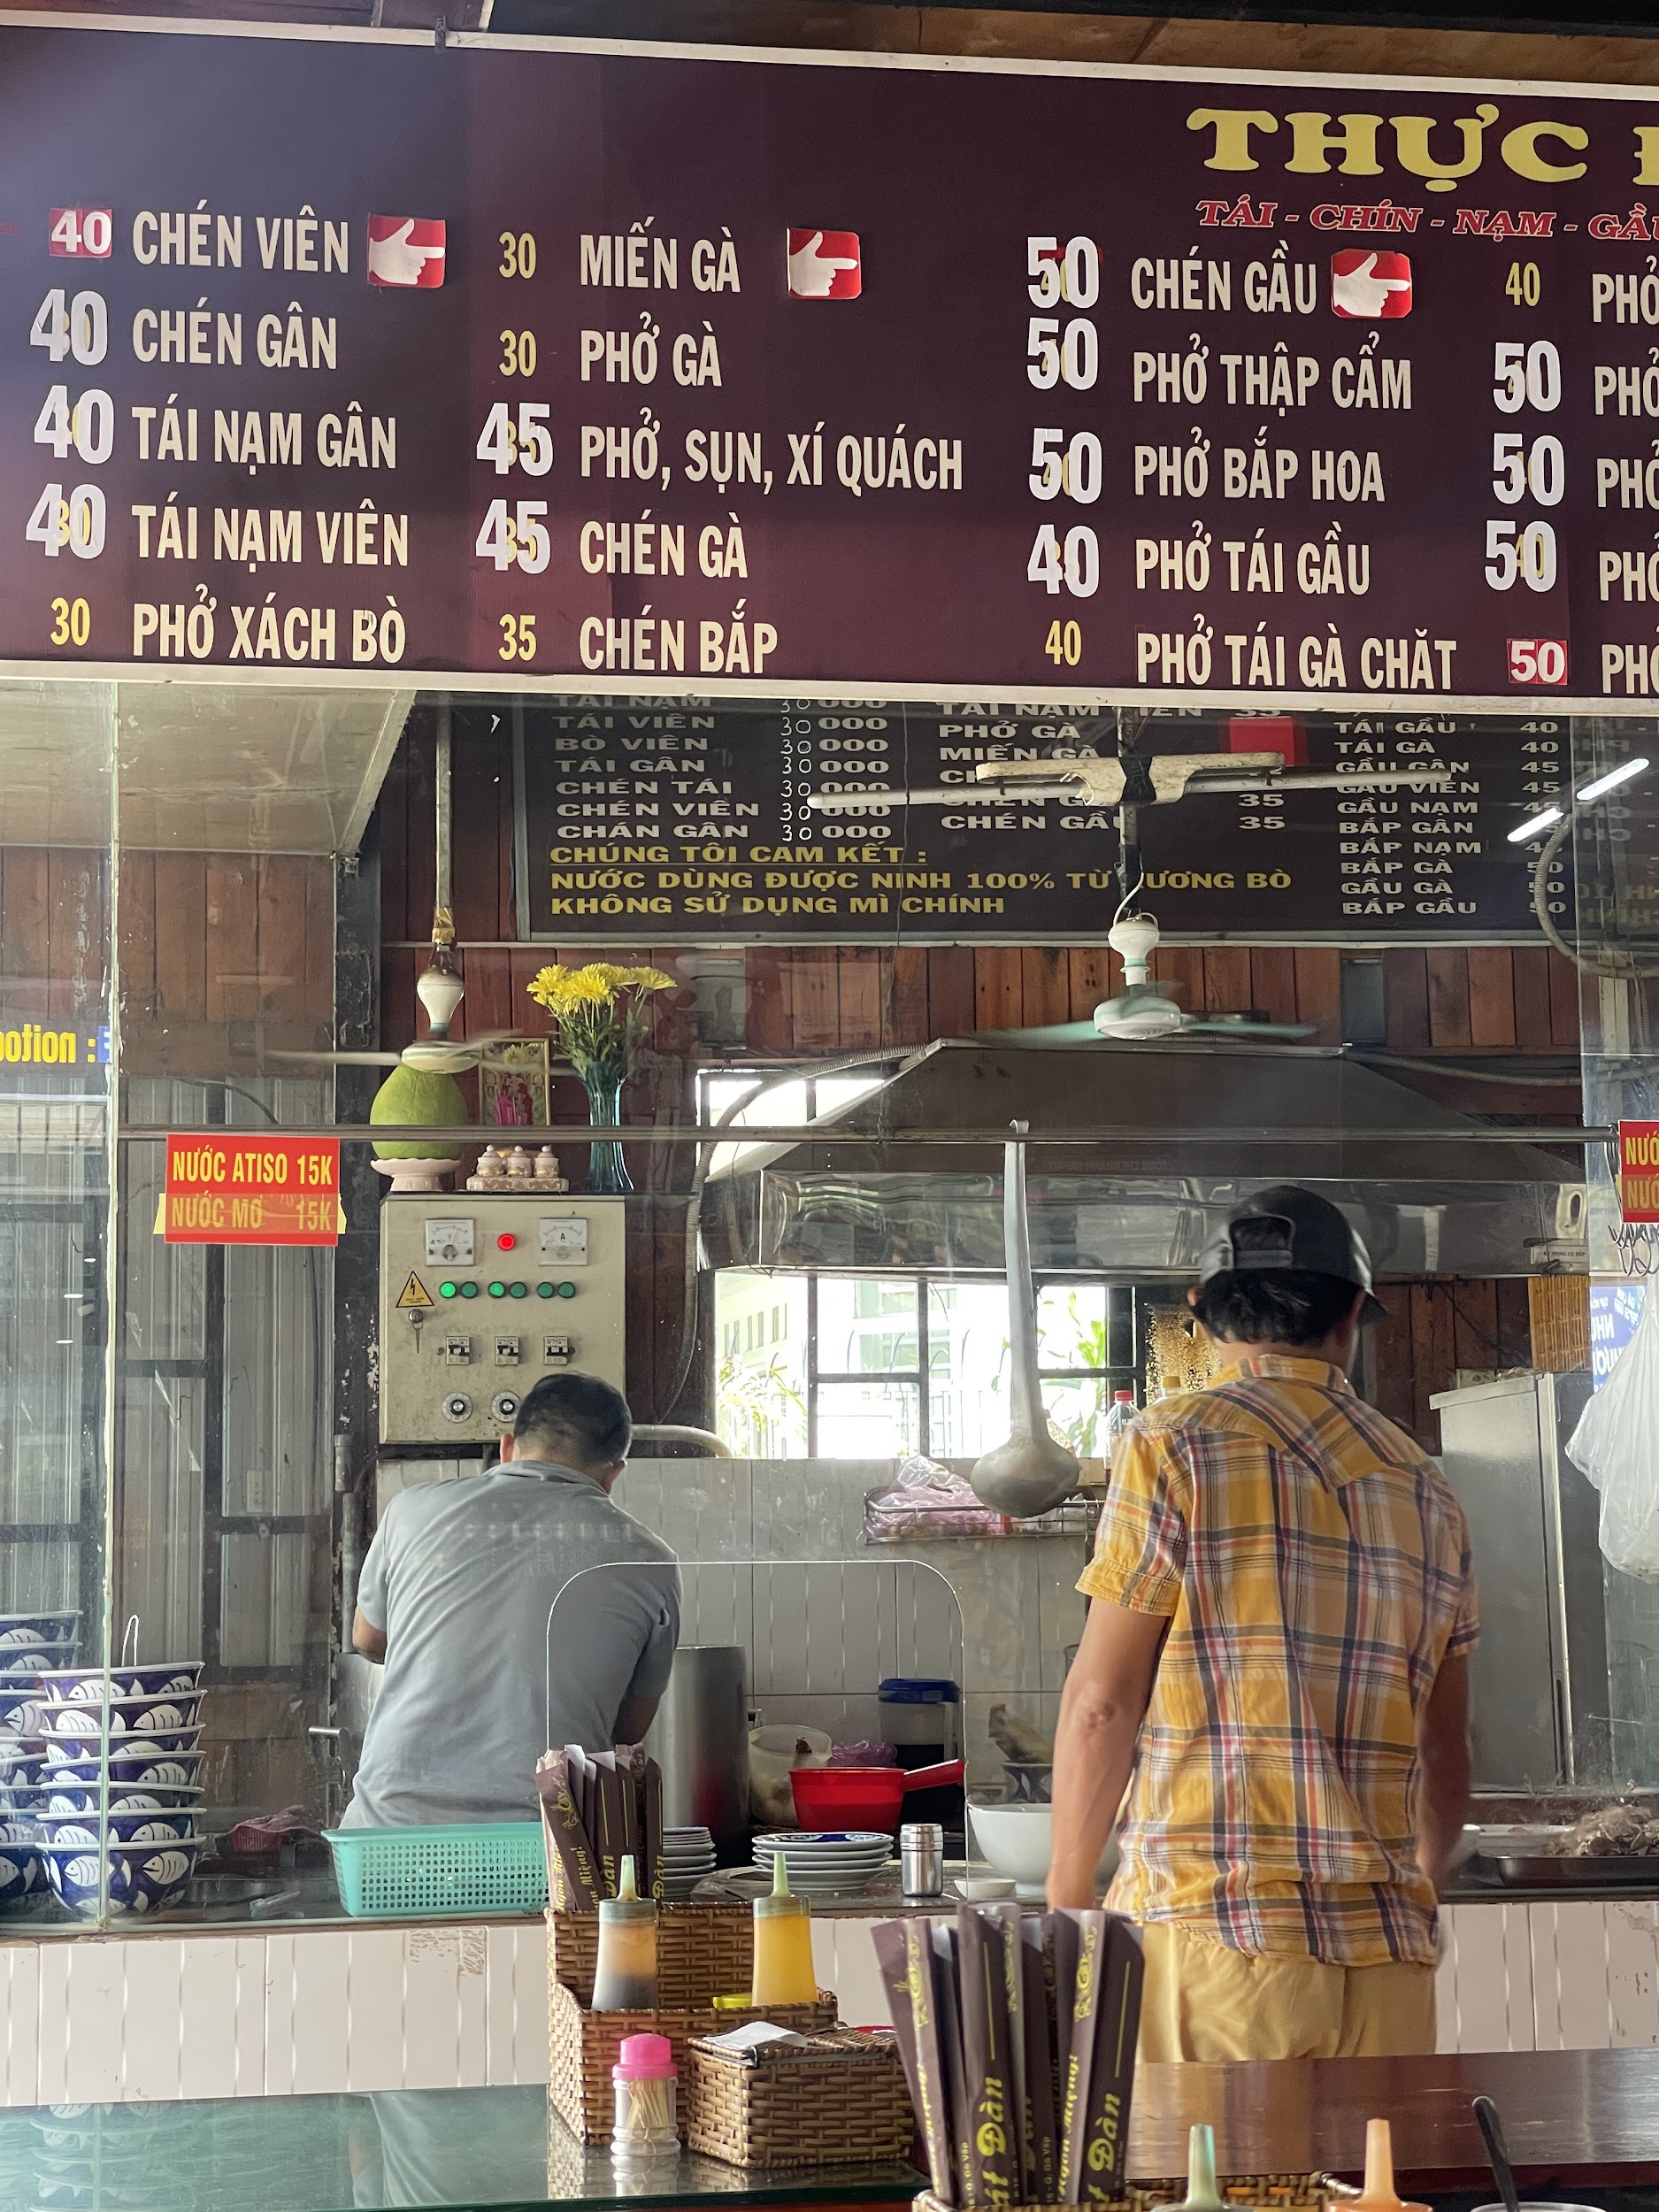 'Fastfood' ở Việt Nam không phải burger hay pizza mà có tên là 'QUÁN' - 3